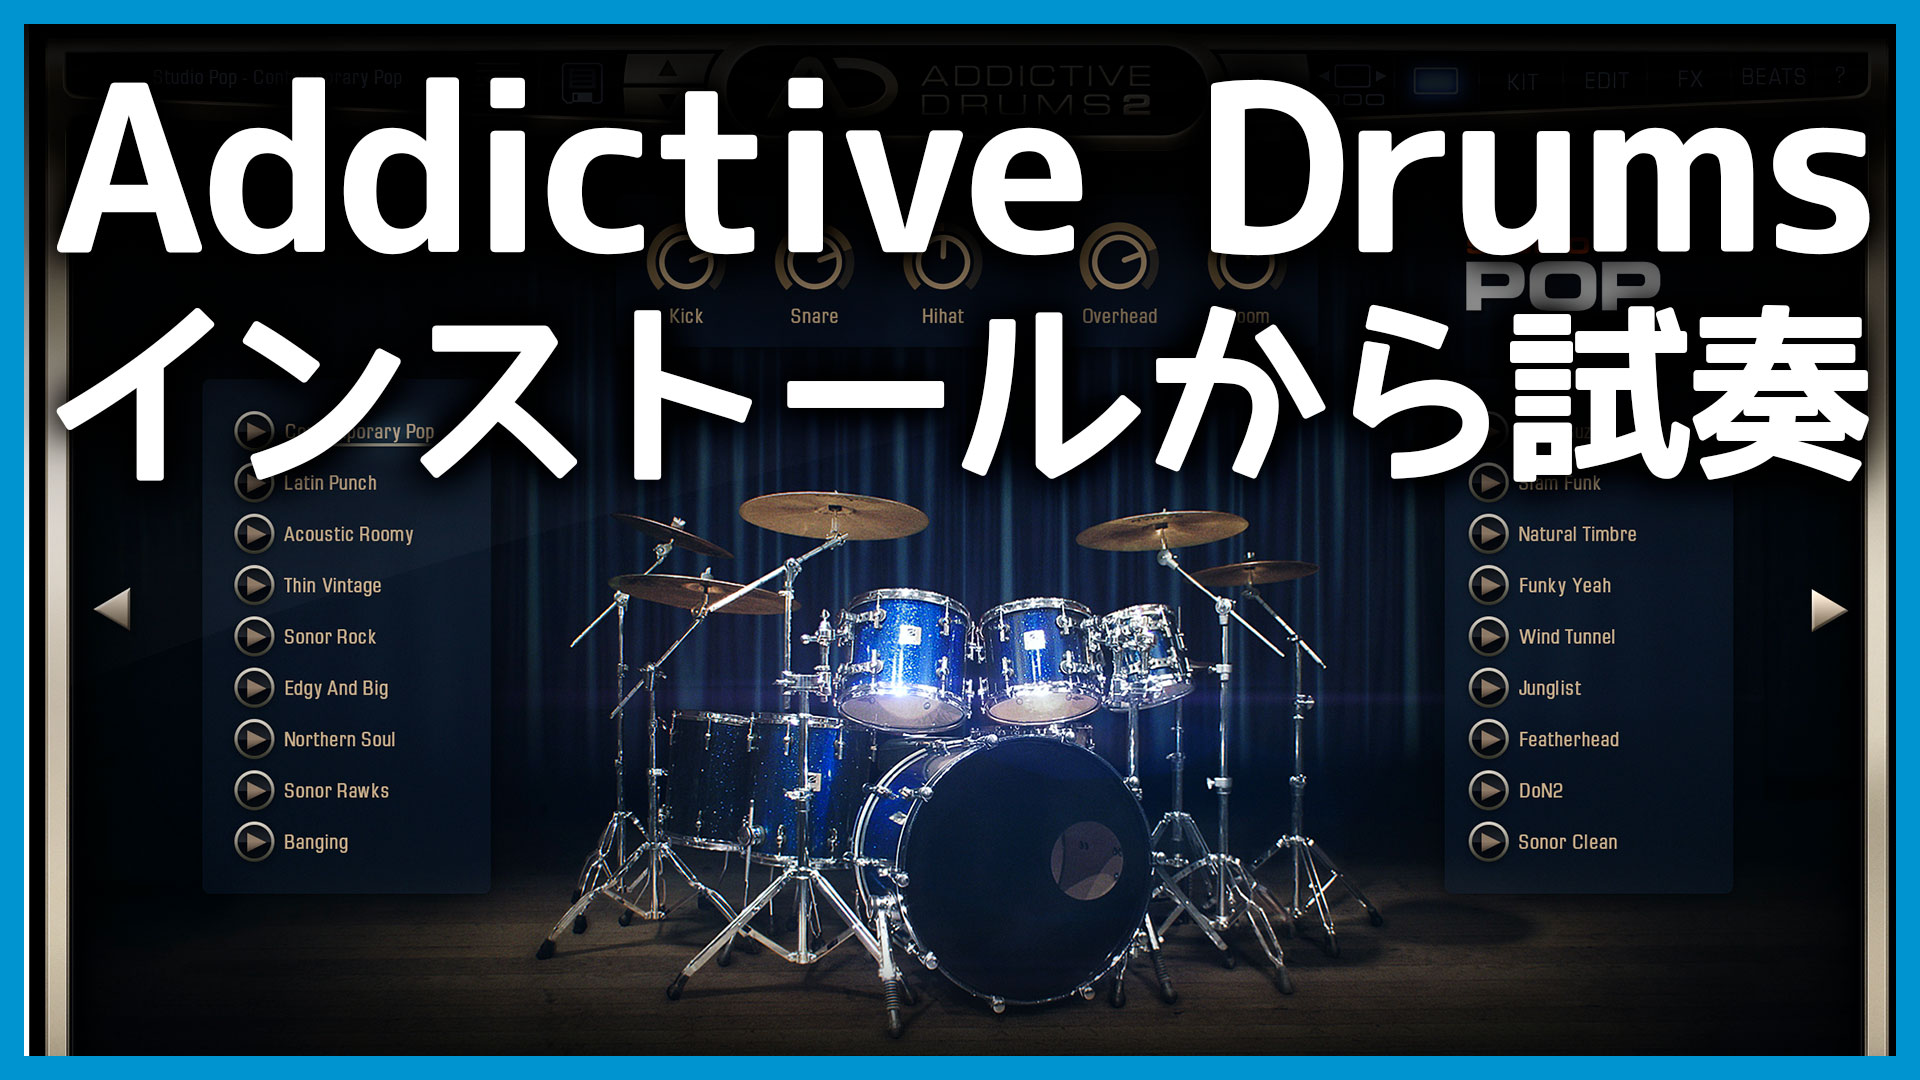 Addictive Drums 2 Customをインストールする手順とADpak(ドラムキット)の選び方